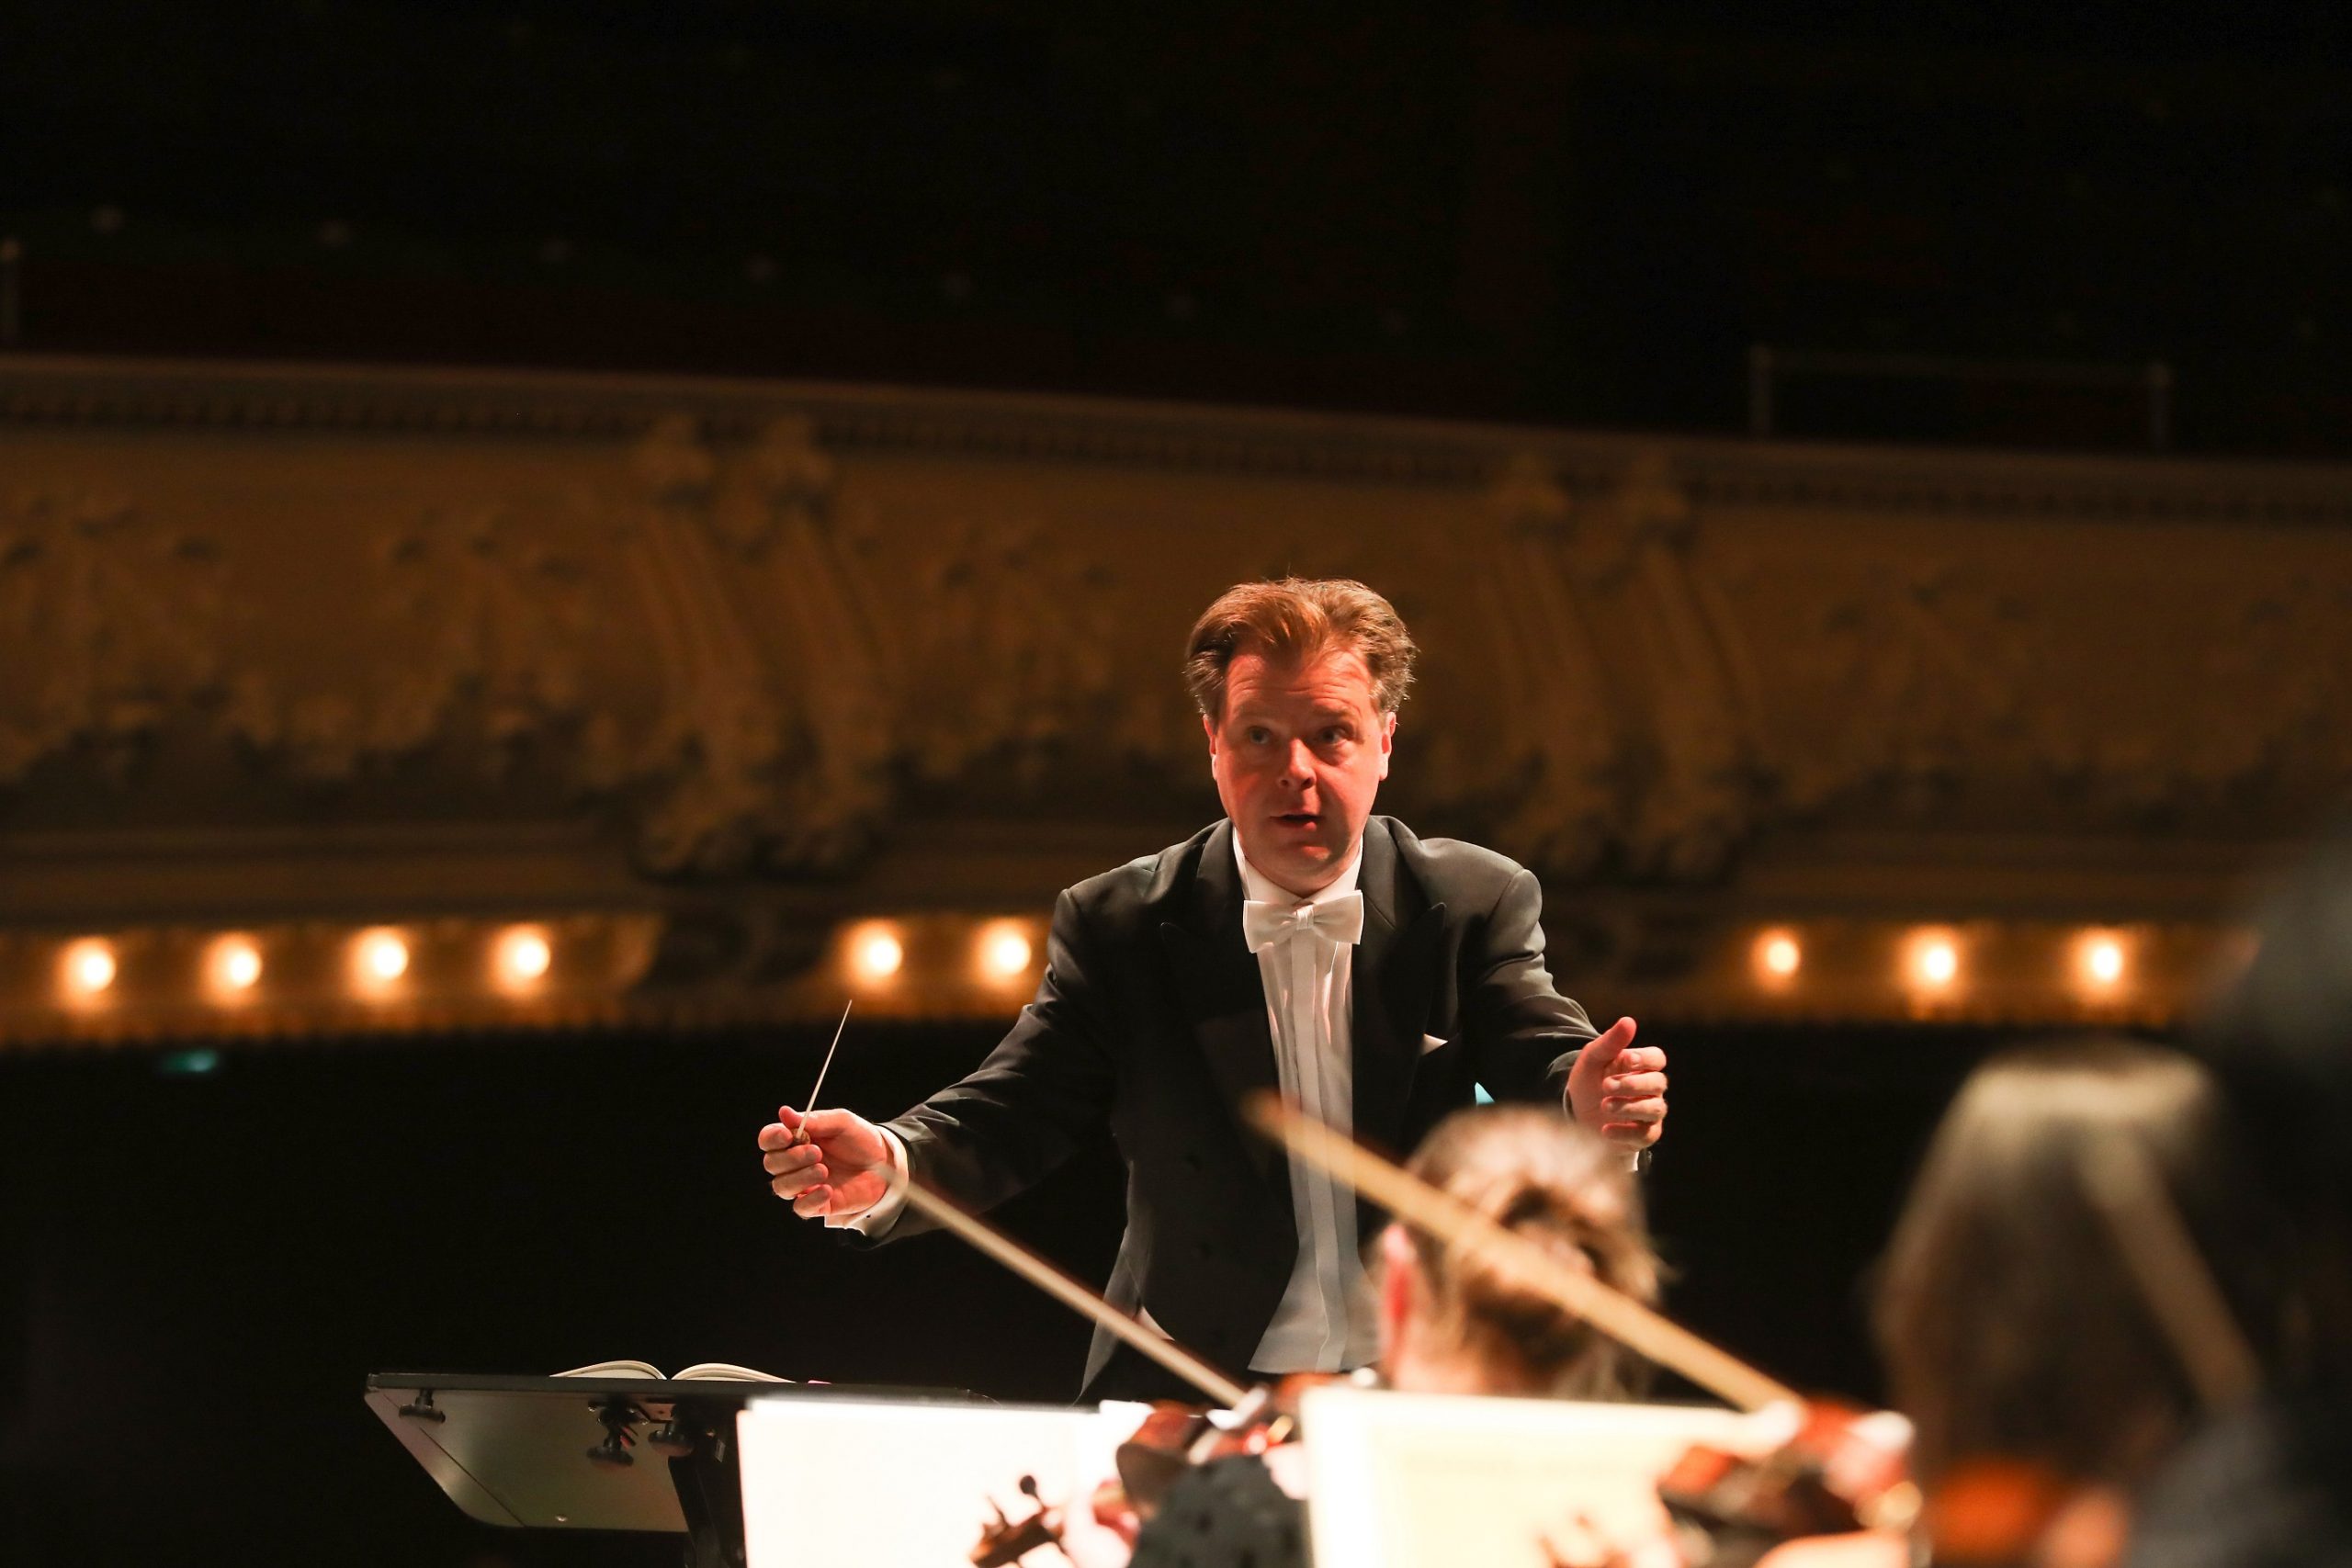 7. Sinfoniekonzert auf’s Engste mit Ungarn verknüpft